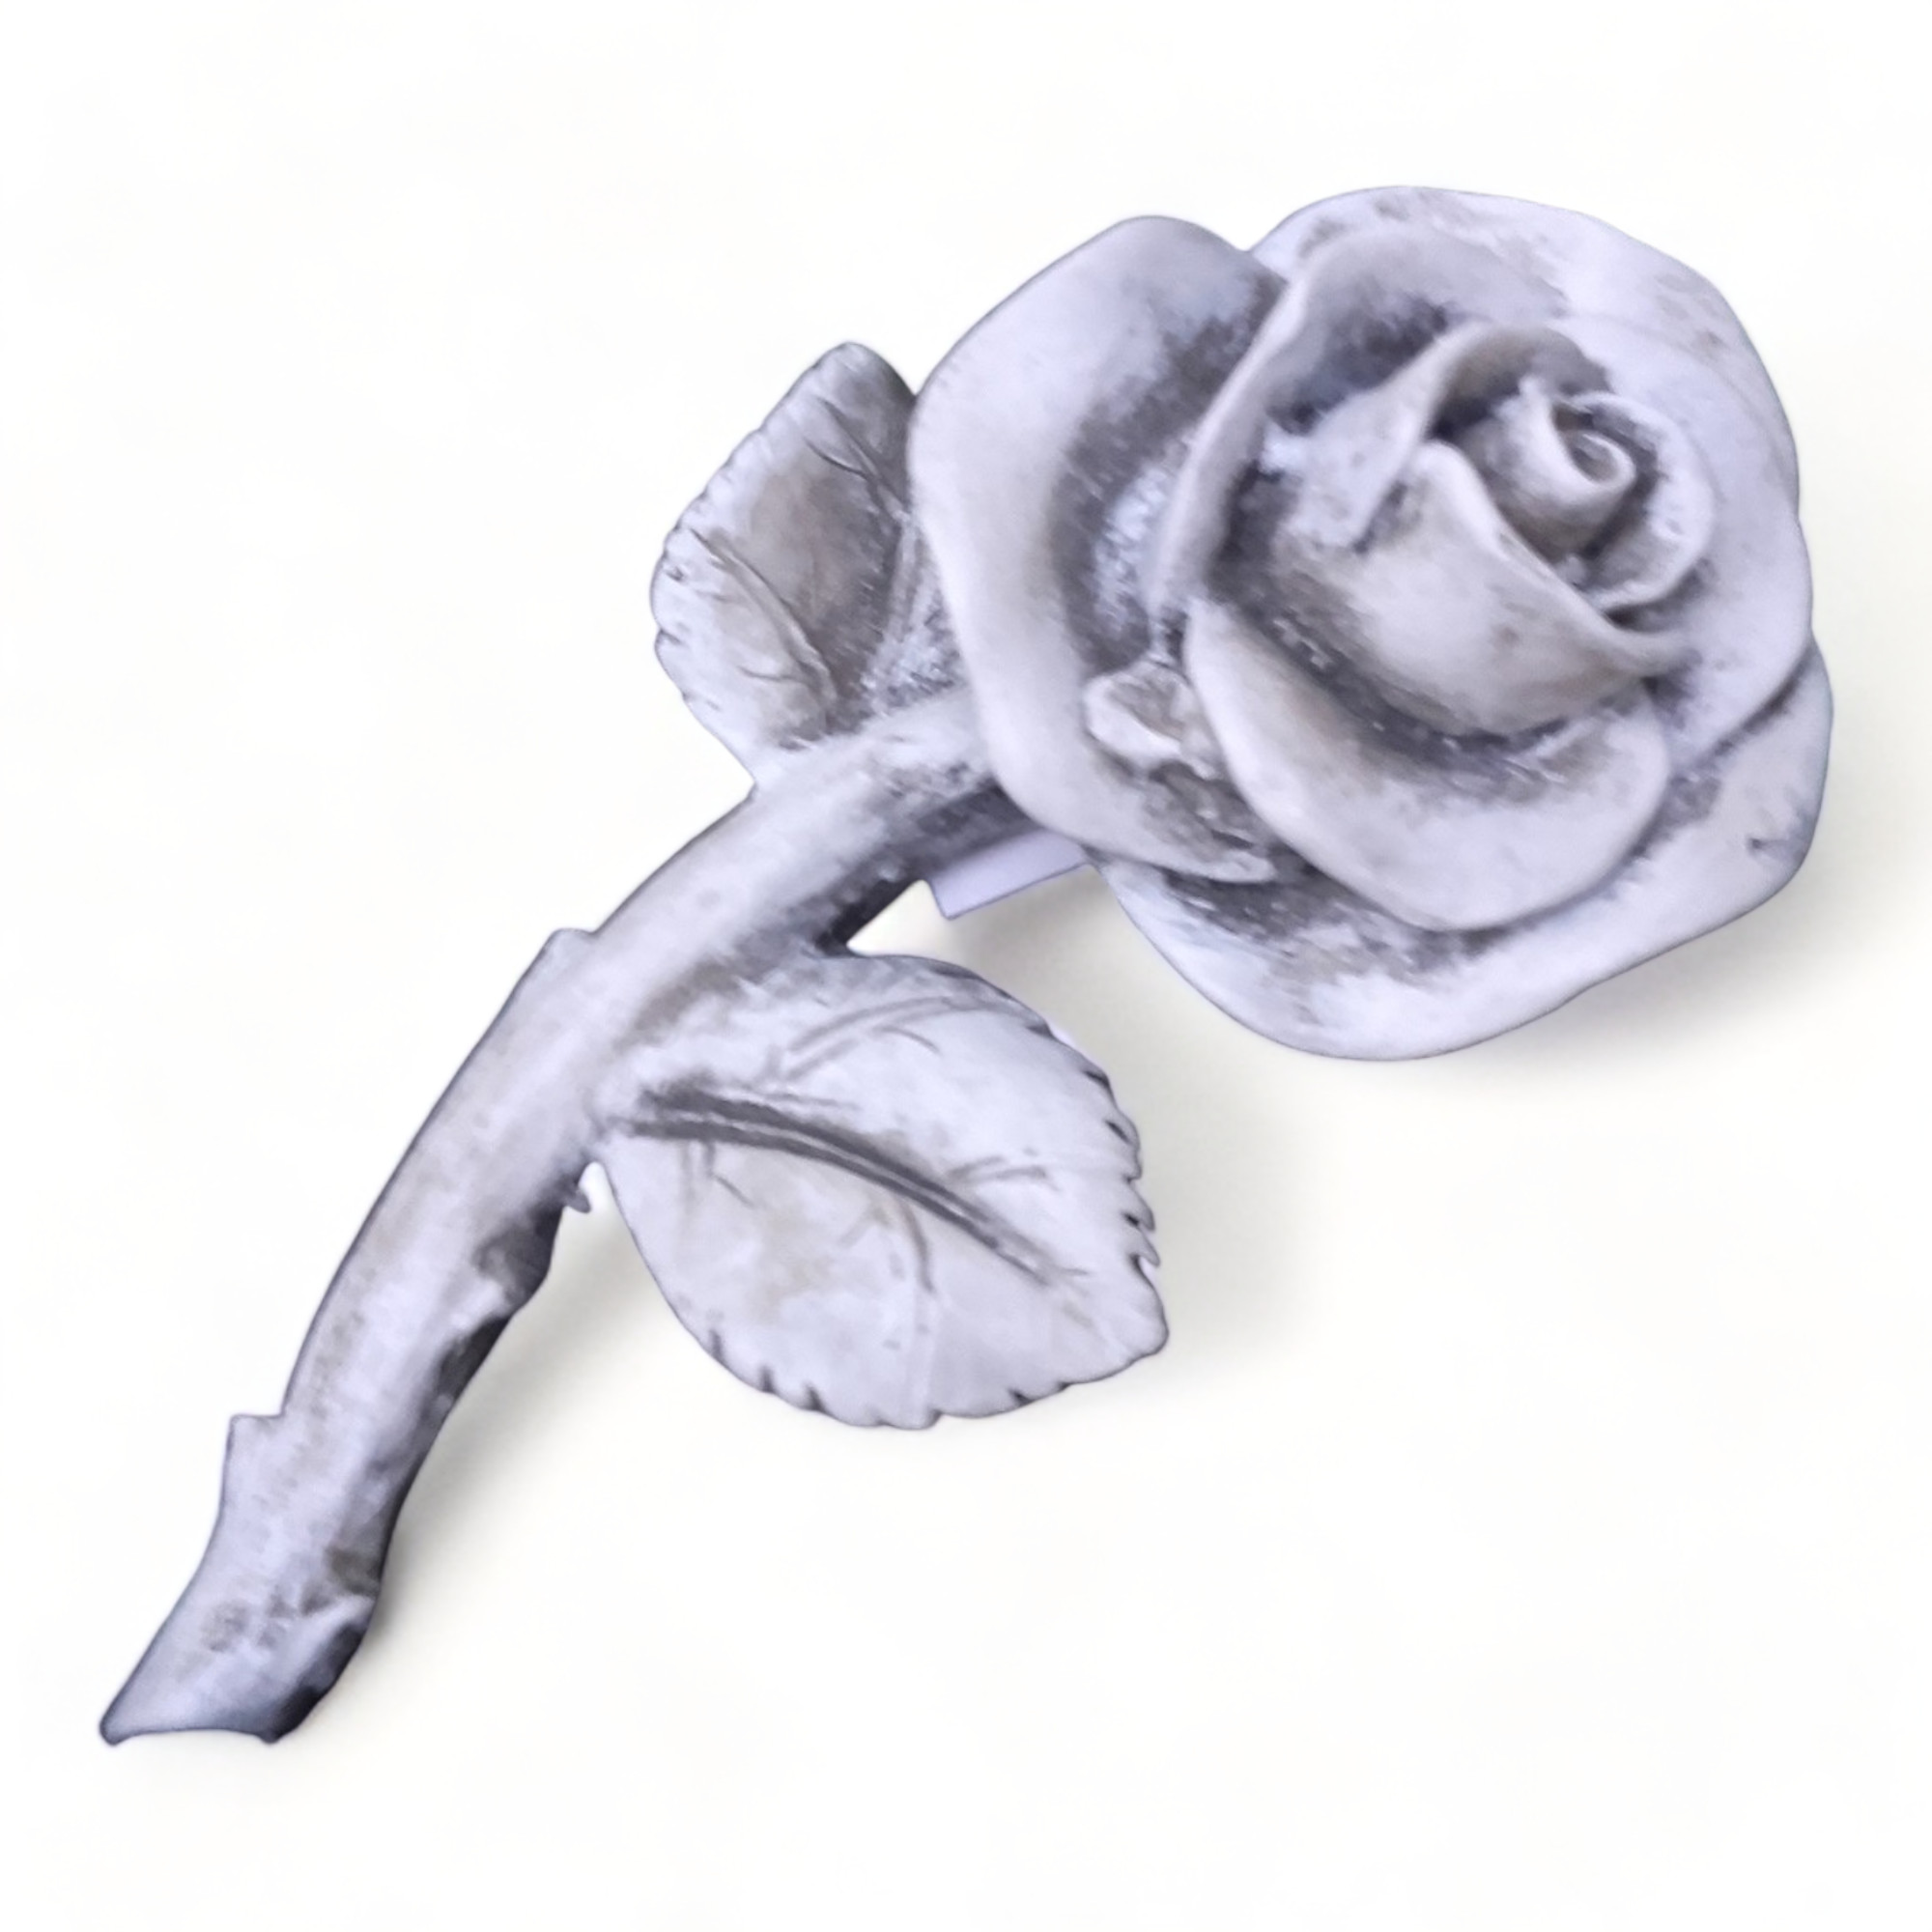 XL Rose mit Stiel Rosenblüte auch Grabdekoration Grabschmuck wetterfest 13,5cm